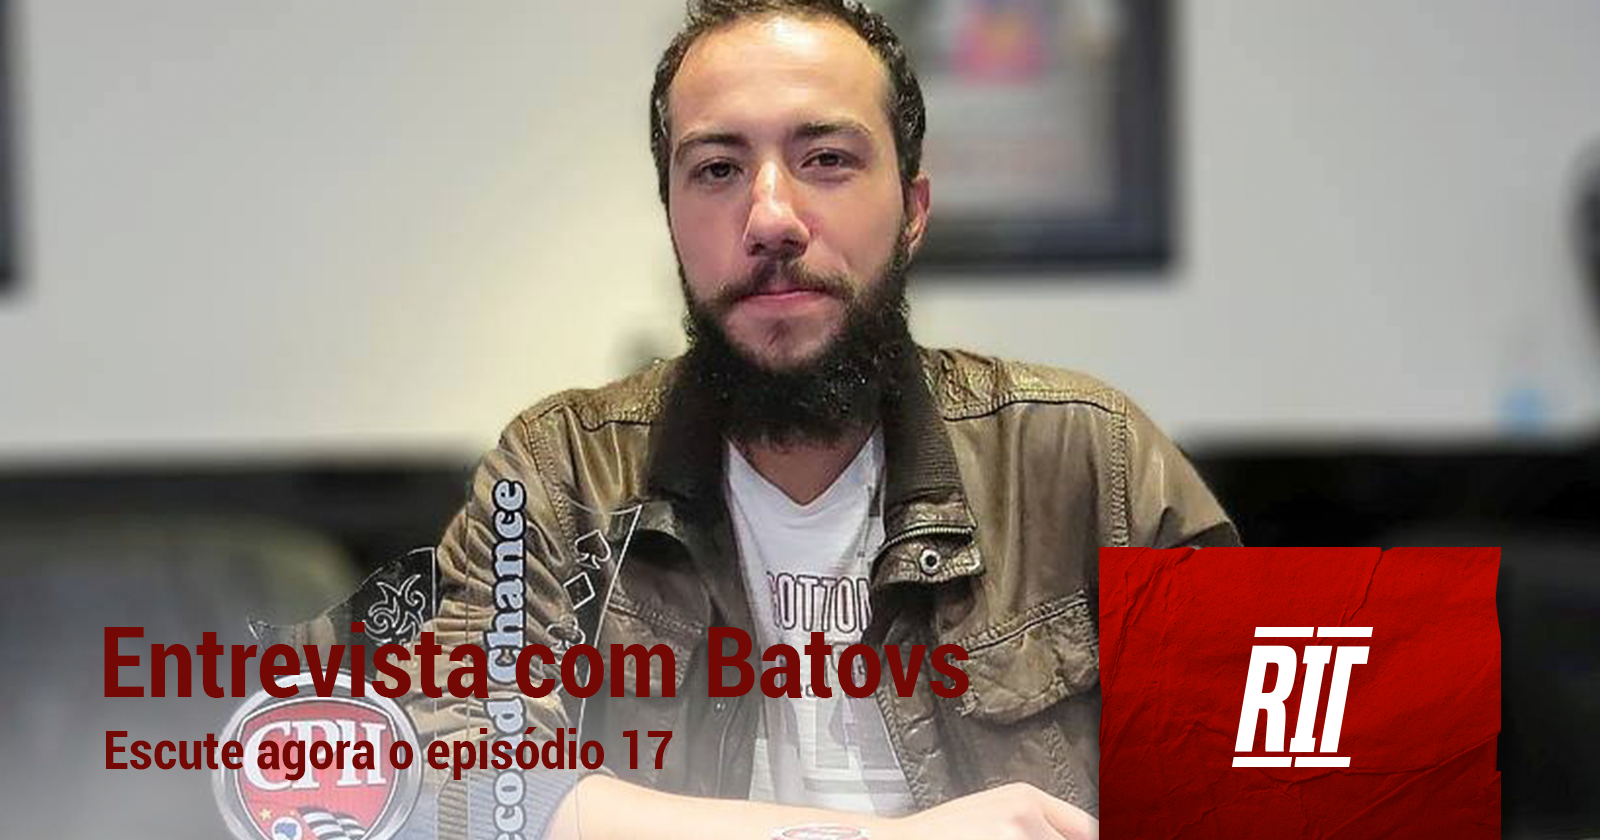 poker rit podcast entrevista bruno collaço batovs episodio 17